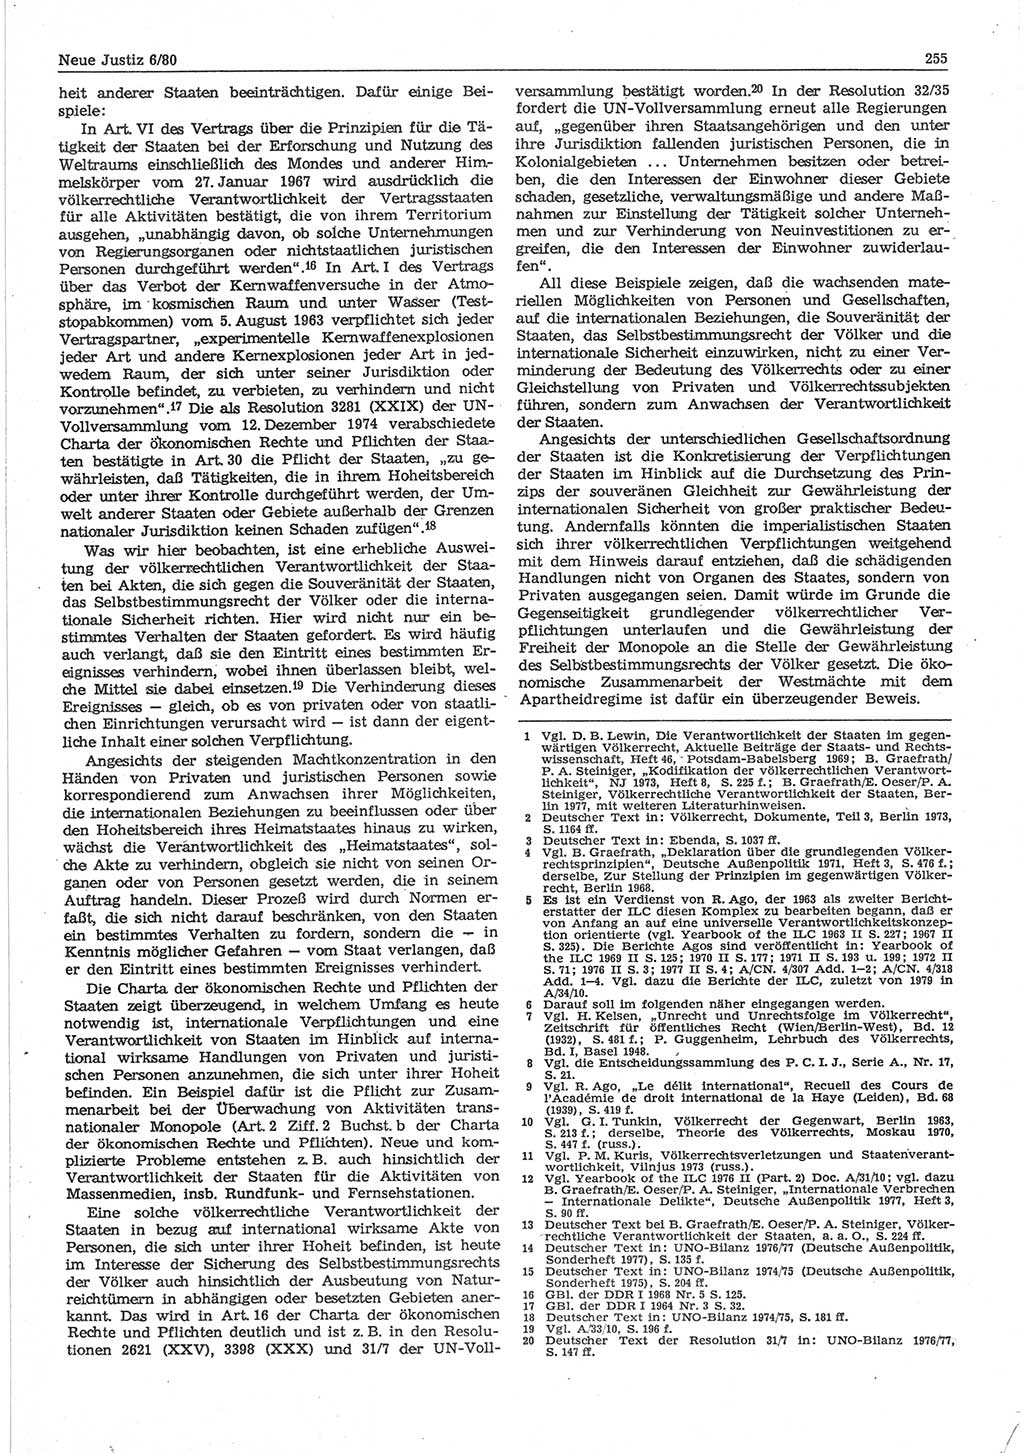 Neue Justiz (NJ), Zeitschrift für sozialistisches Recht und Gesetzlichkeit [Deutsche Demokratische Republik (DDR)], 34. Jahrgang 1980, Seite 255 (NJ DDR 1980, S. 255)